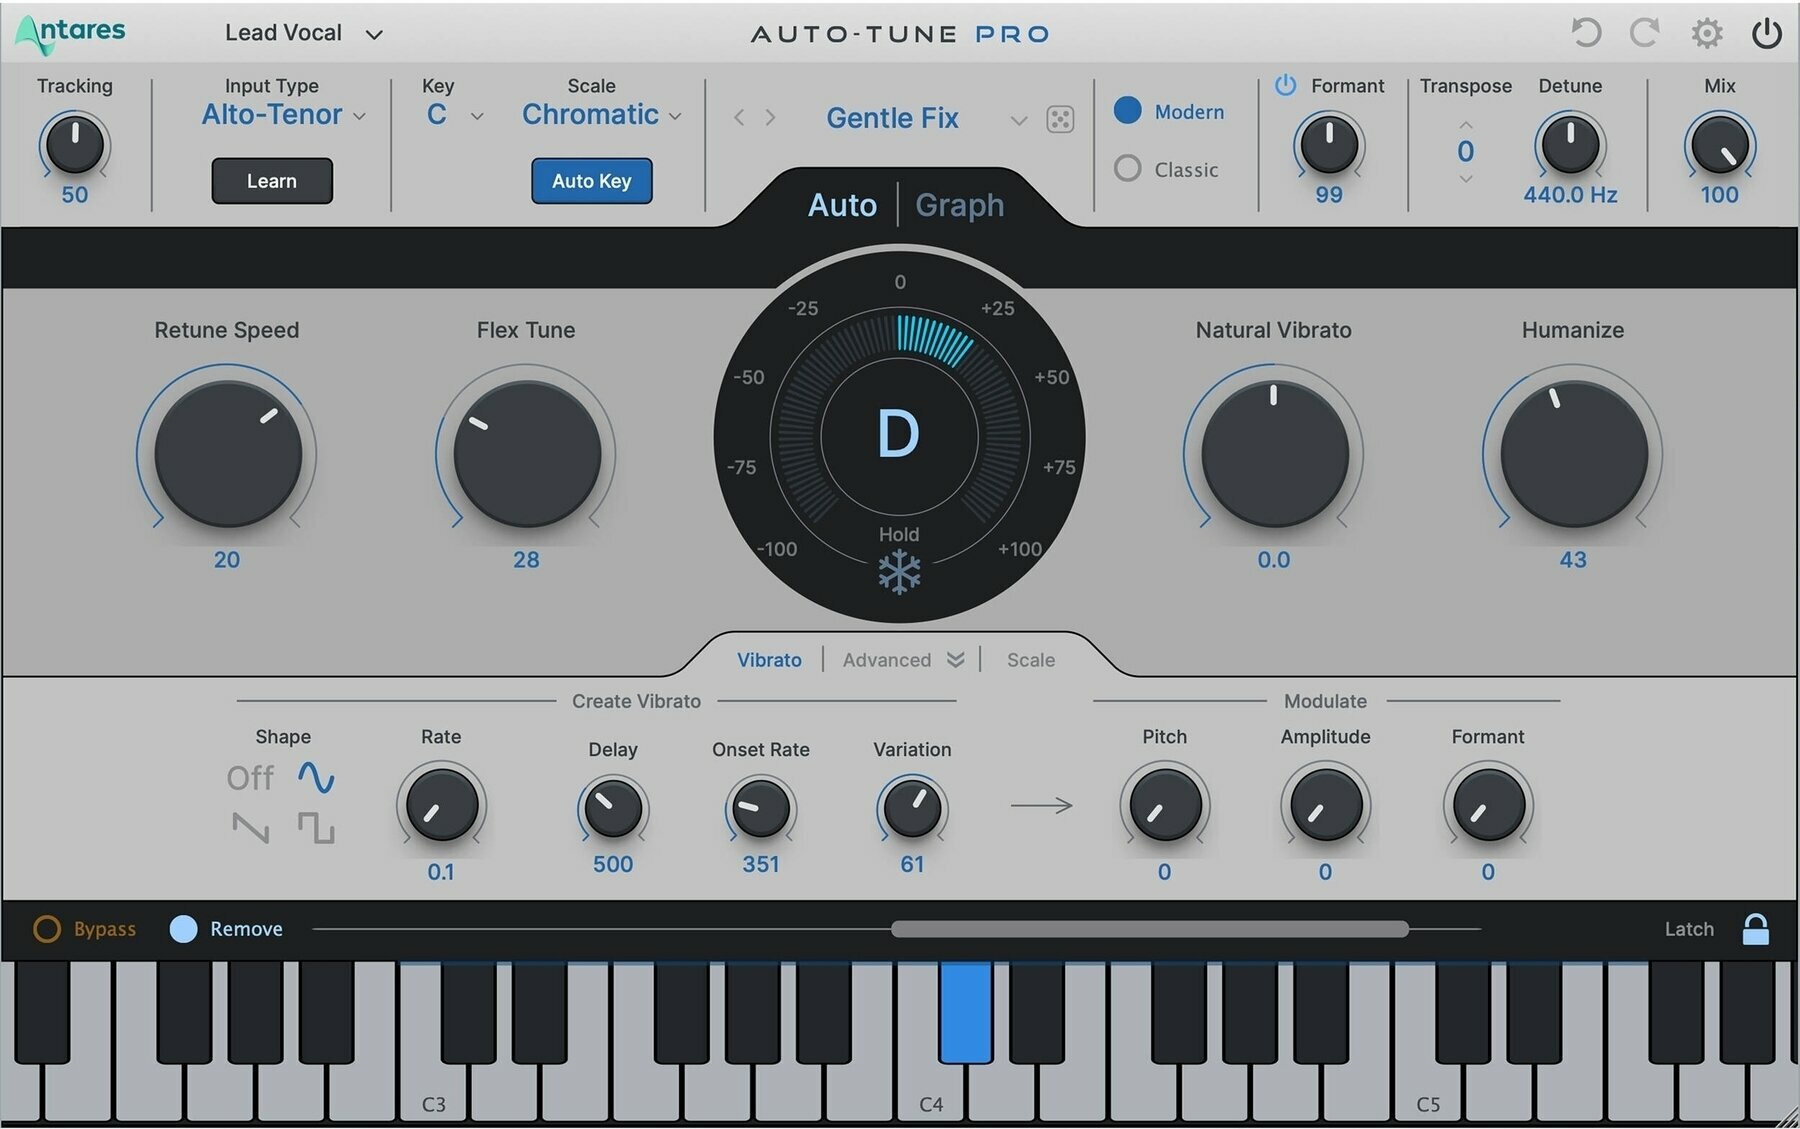 Virtuális hangszer Antares Auto-Tune Pro X (Digitális termék)